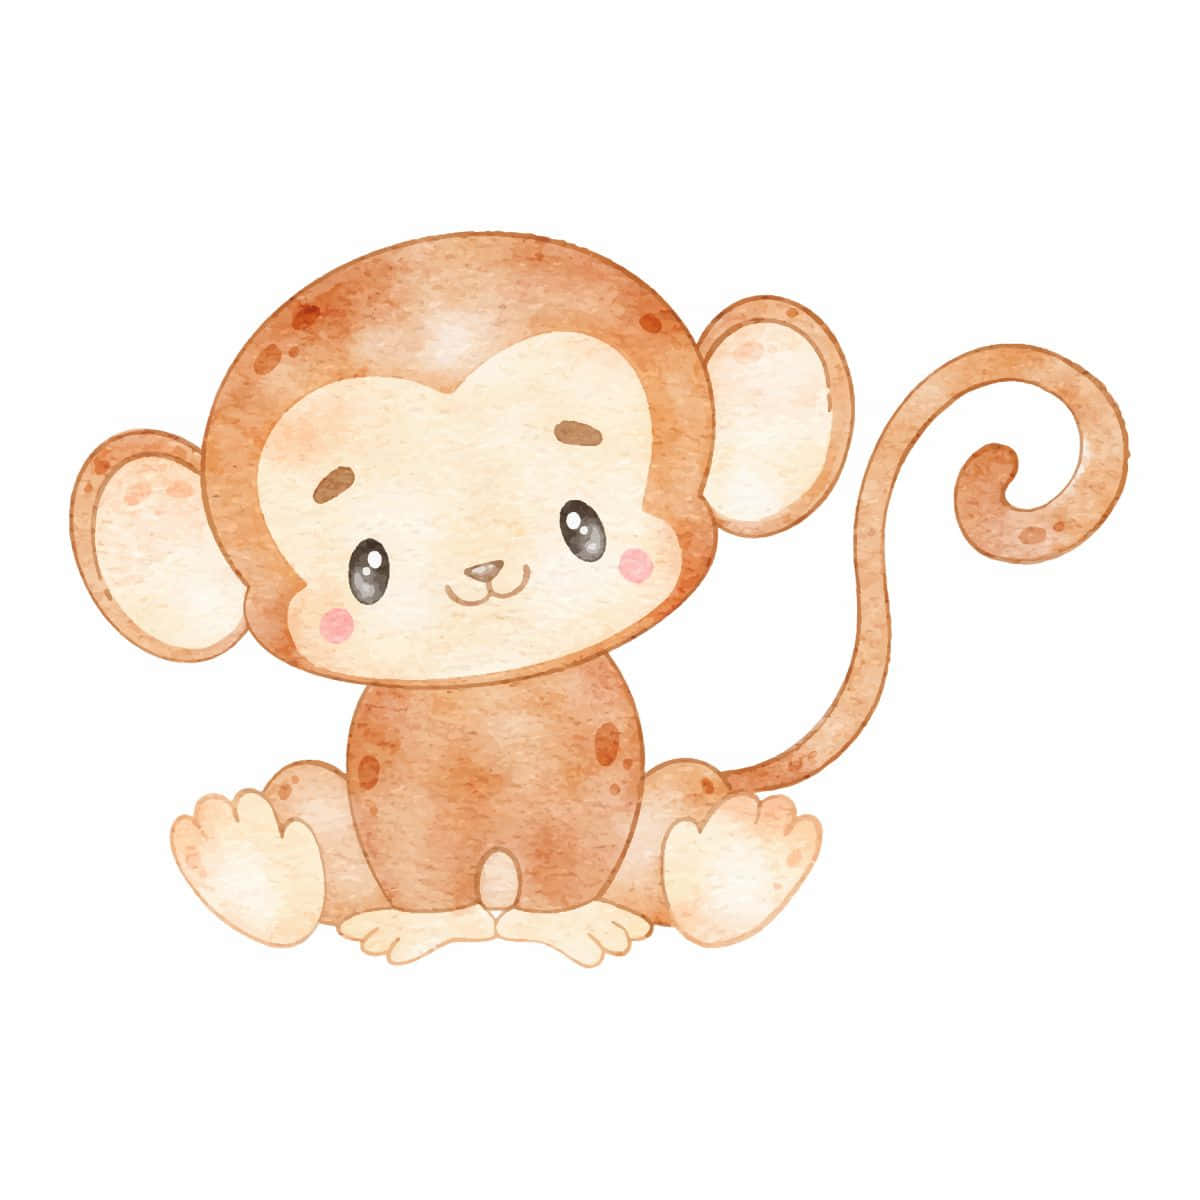 cute drawings of baby monkeys